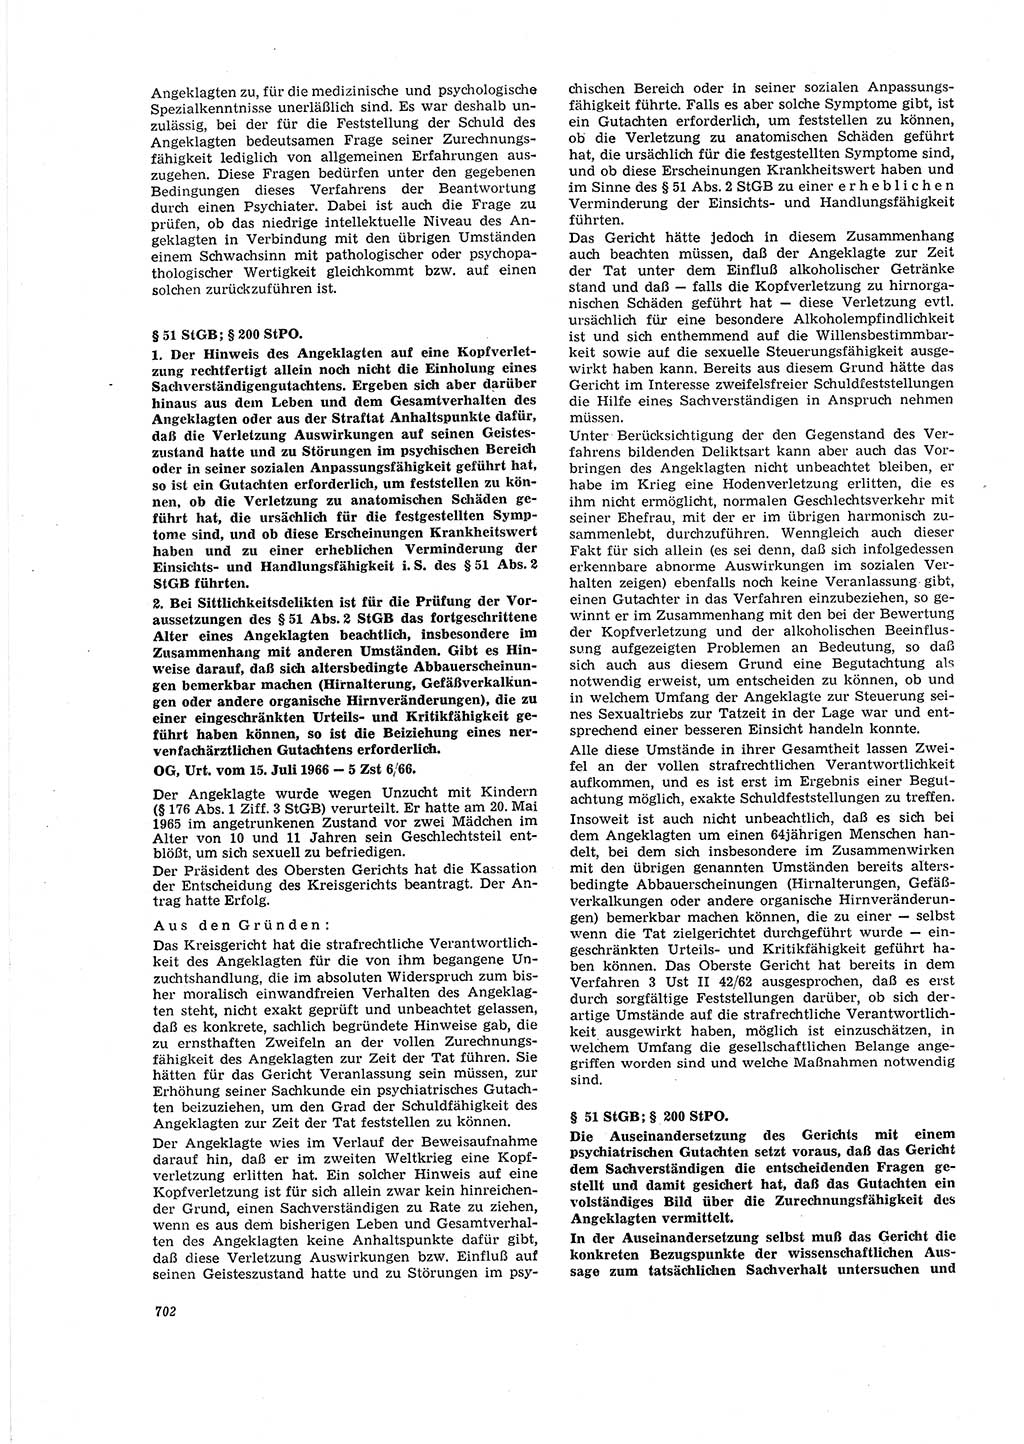 Neue Justiz (NJ), Zeitschrift für Recht und Rechtswissenschaft [Deutsche Demokratische Republik (DDR)], 20. Jahrgang 1966, Seite 702 (NJ DDR 1966, S. 702)